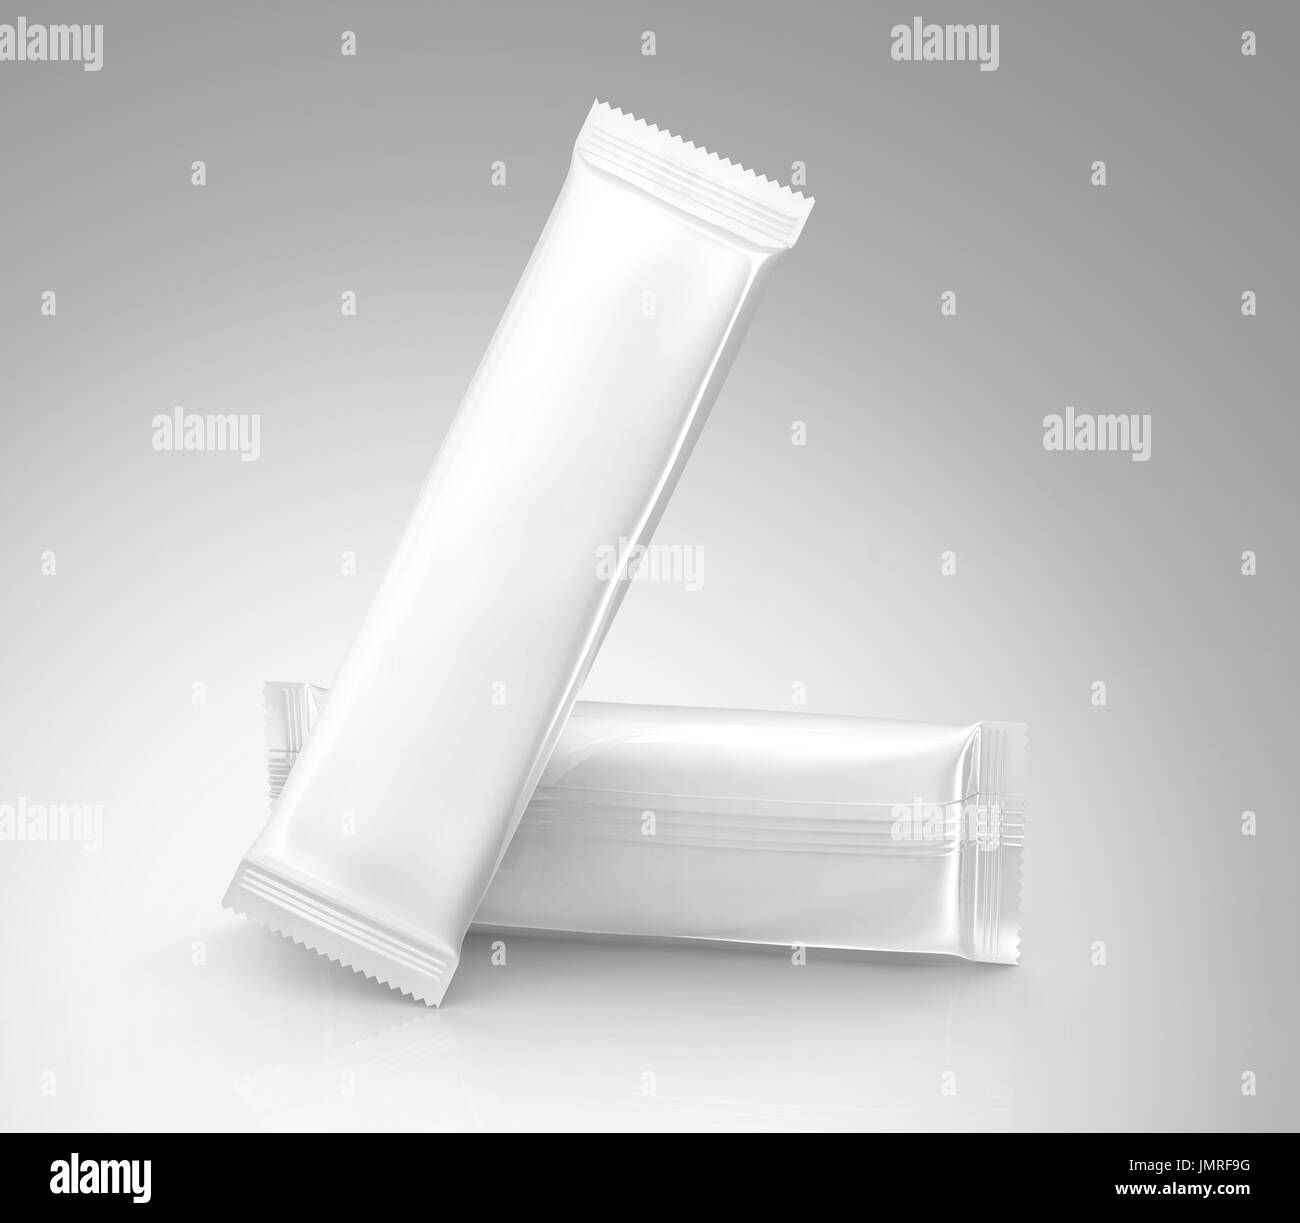 Emballage alimentaire vierge immersive, deux sacs blancs modèle pour des collations, de sucre ou de café instantané dans le rendu 3D Banque D'Images